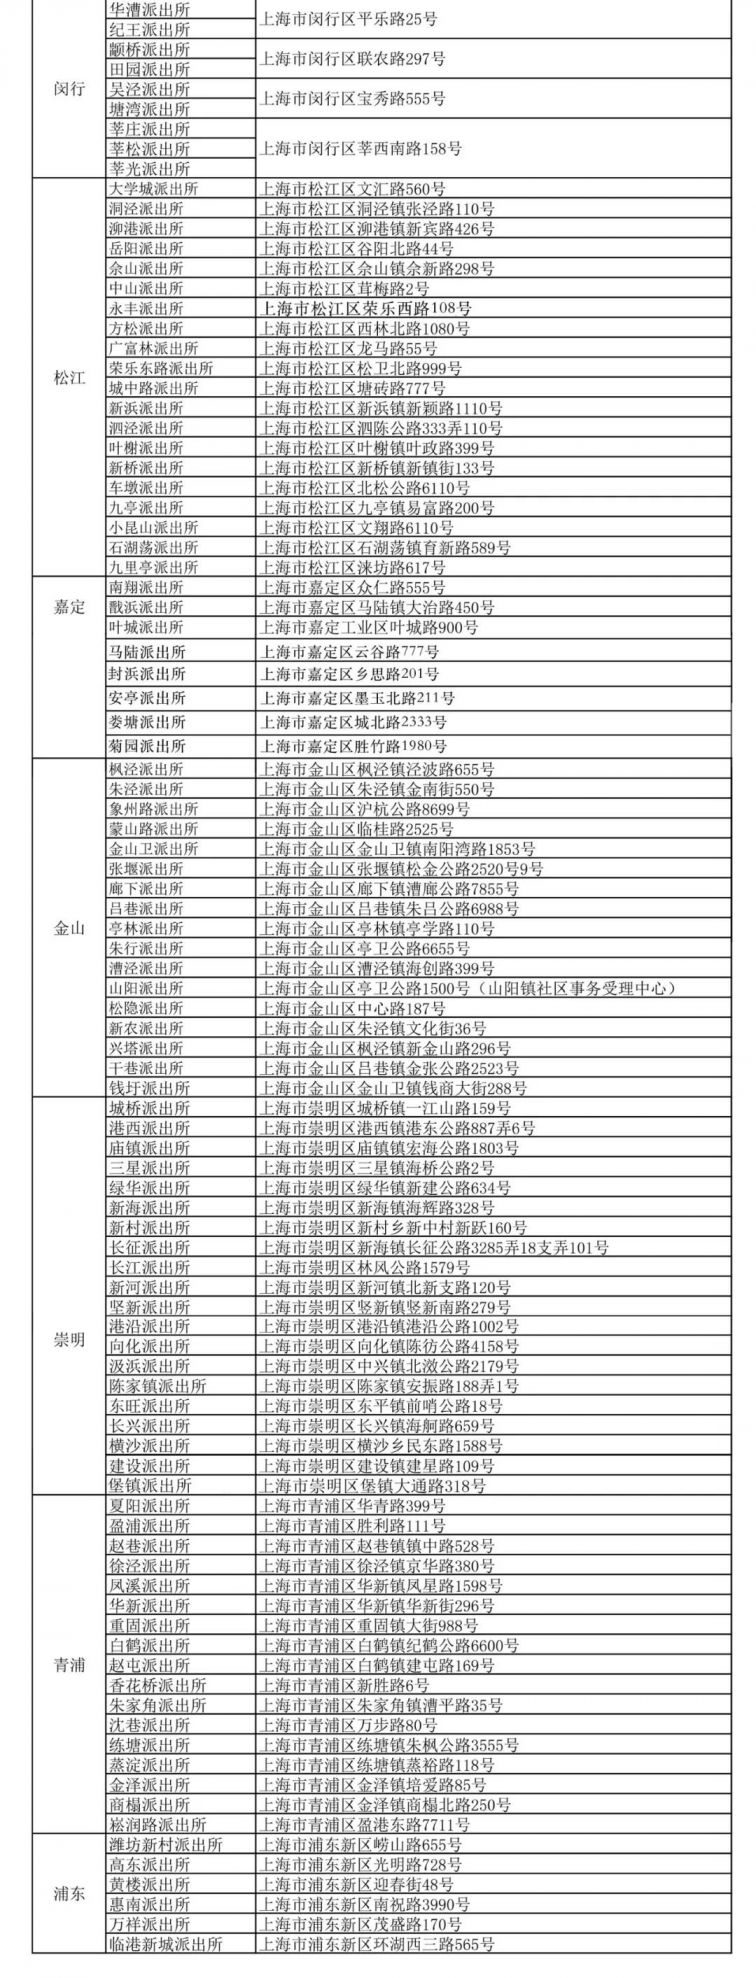 上海配备临时身份证制作机的派出所增至152个